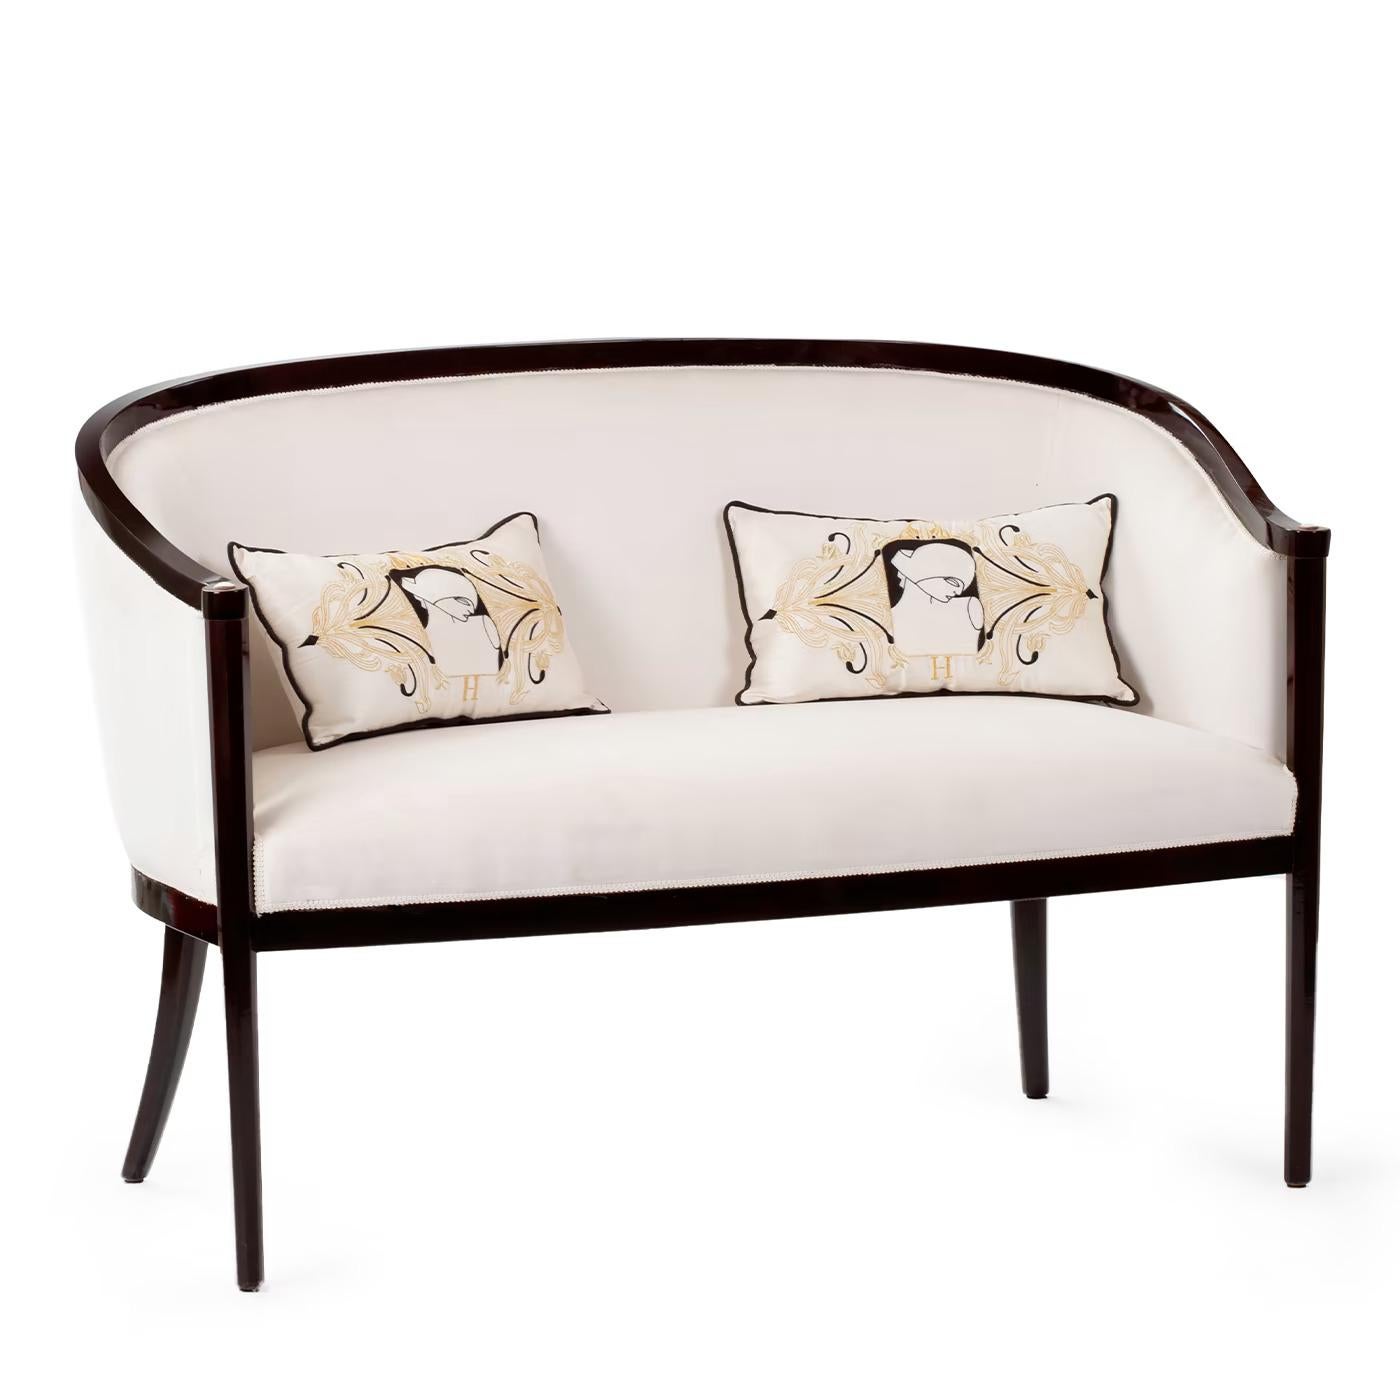 Inspiriert vom Art-déco-Bildhauer Boris Lovet, zeichnet sich dieses wunderbare Sofa durch klare und raffinierte Linien aus, die einem modernen Interieur eine raffinierte Eleganz verleihen. Er ist aus schwarz lackiertem Holz gefertigt, weich